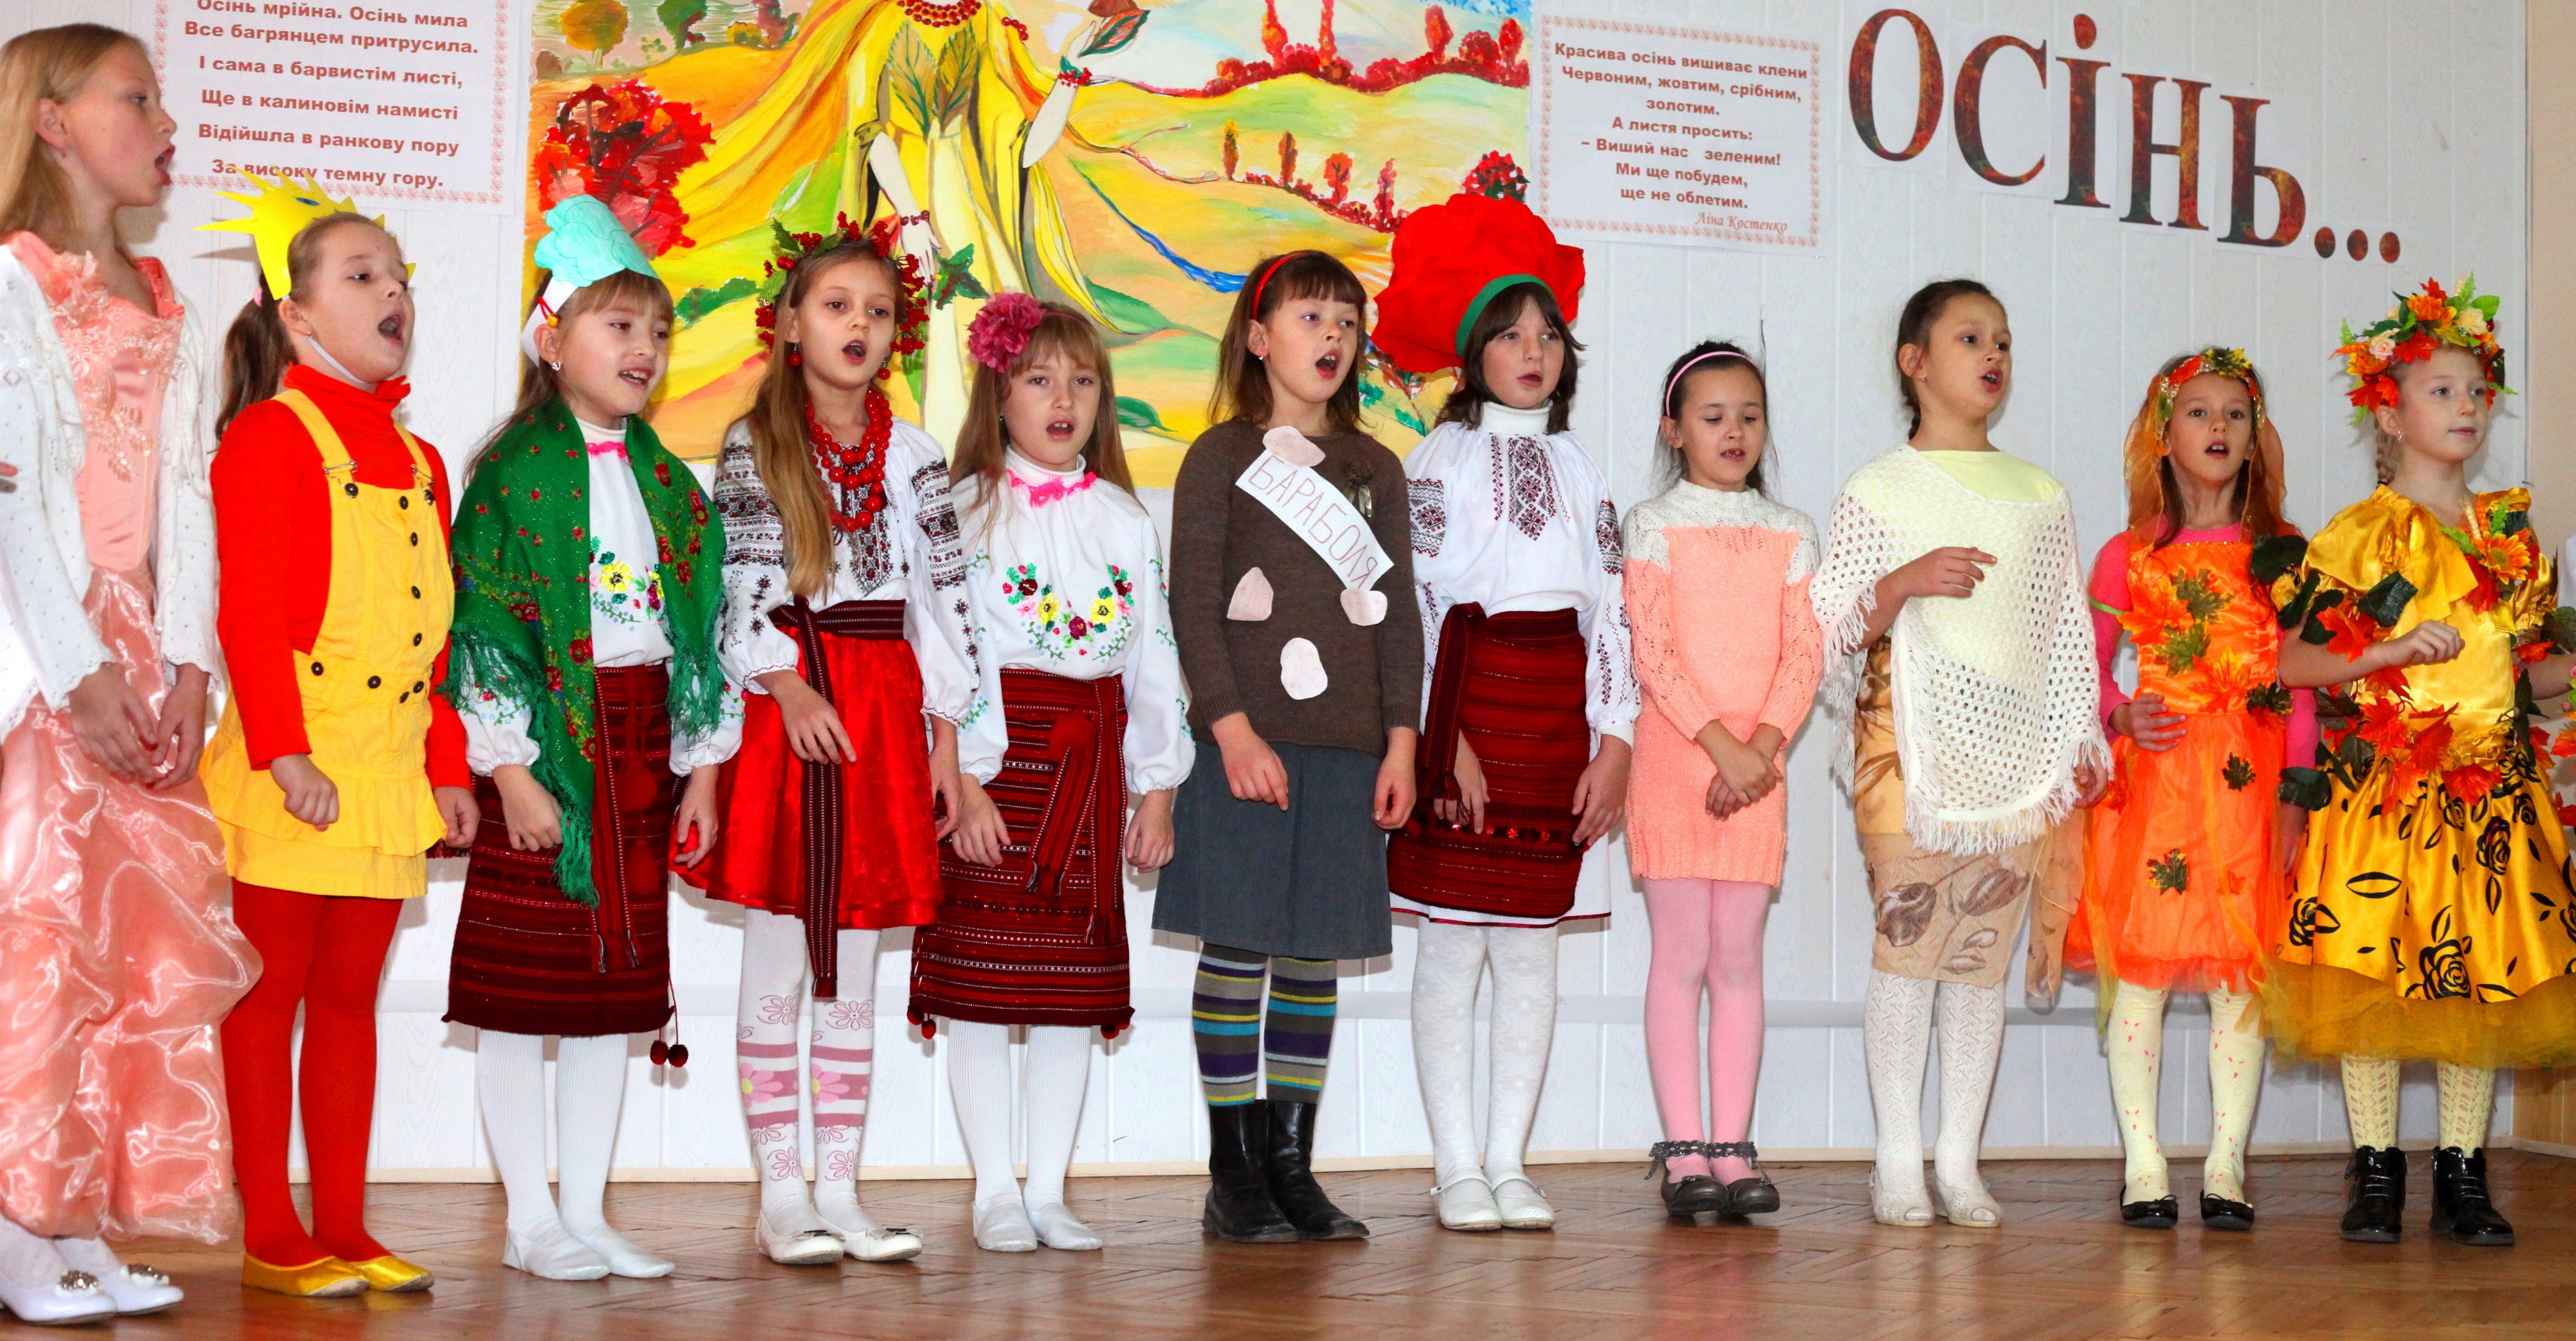 eleven schoolgirls performing